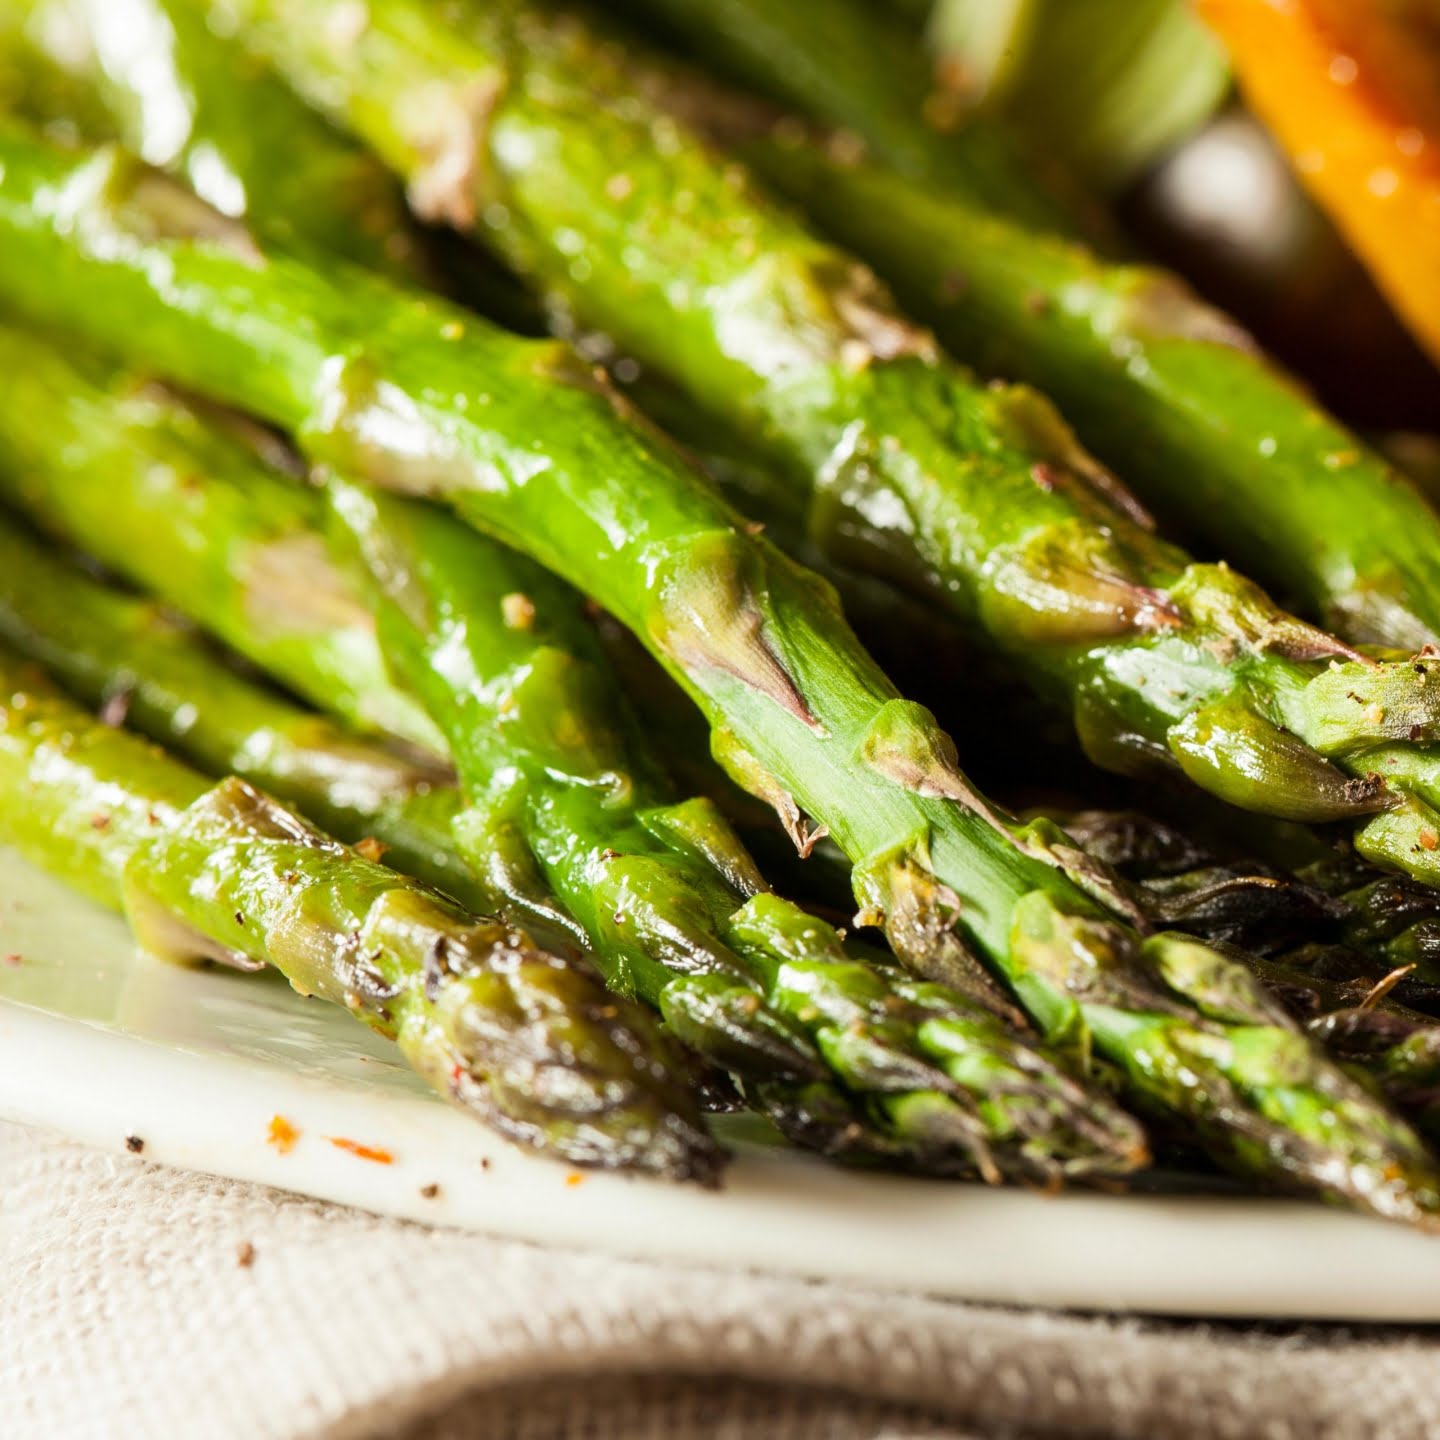 Tender asparagus with a light crisp.